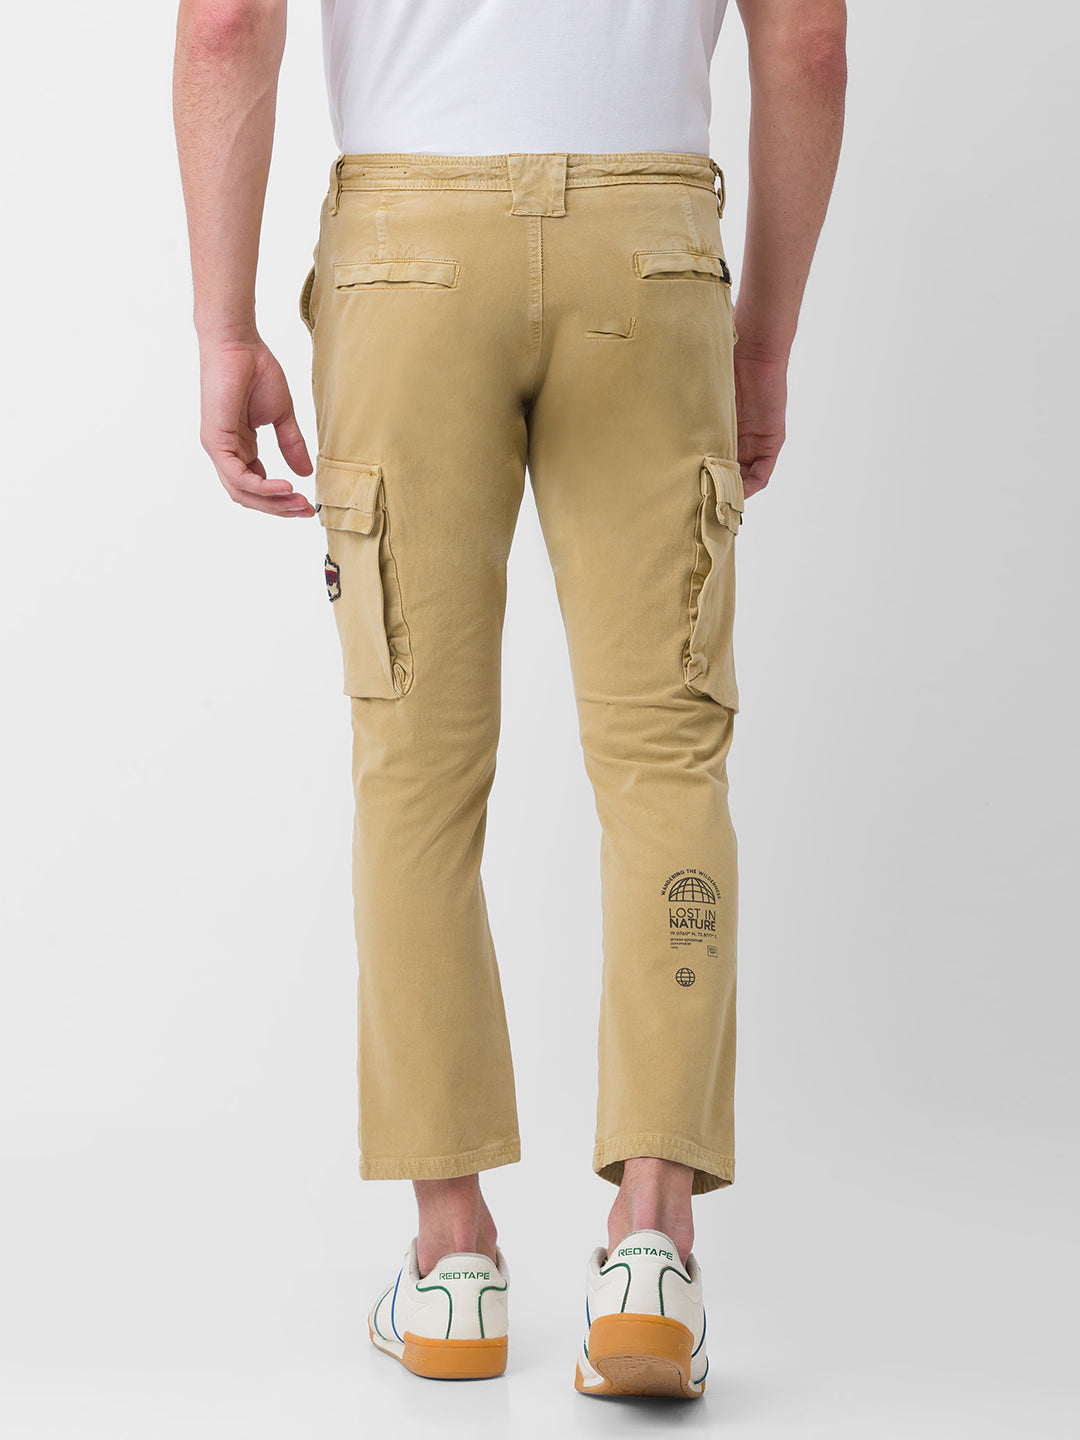 11oz Cotton Whipcord Work Pants - Khaki – Iron Shop Provisions